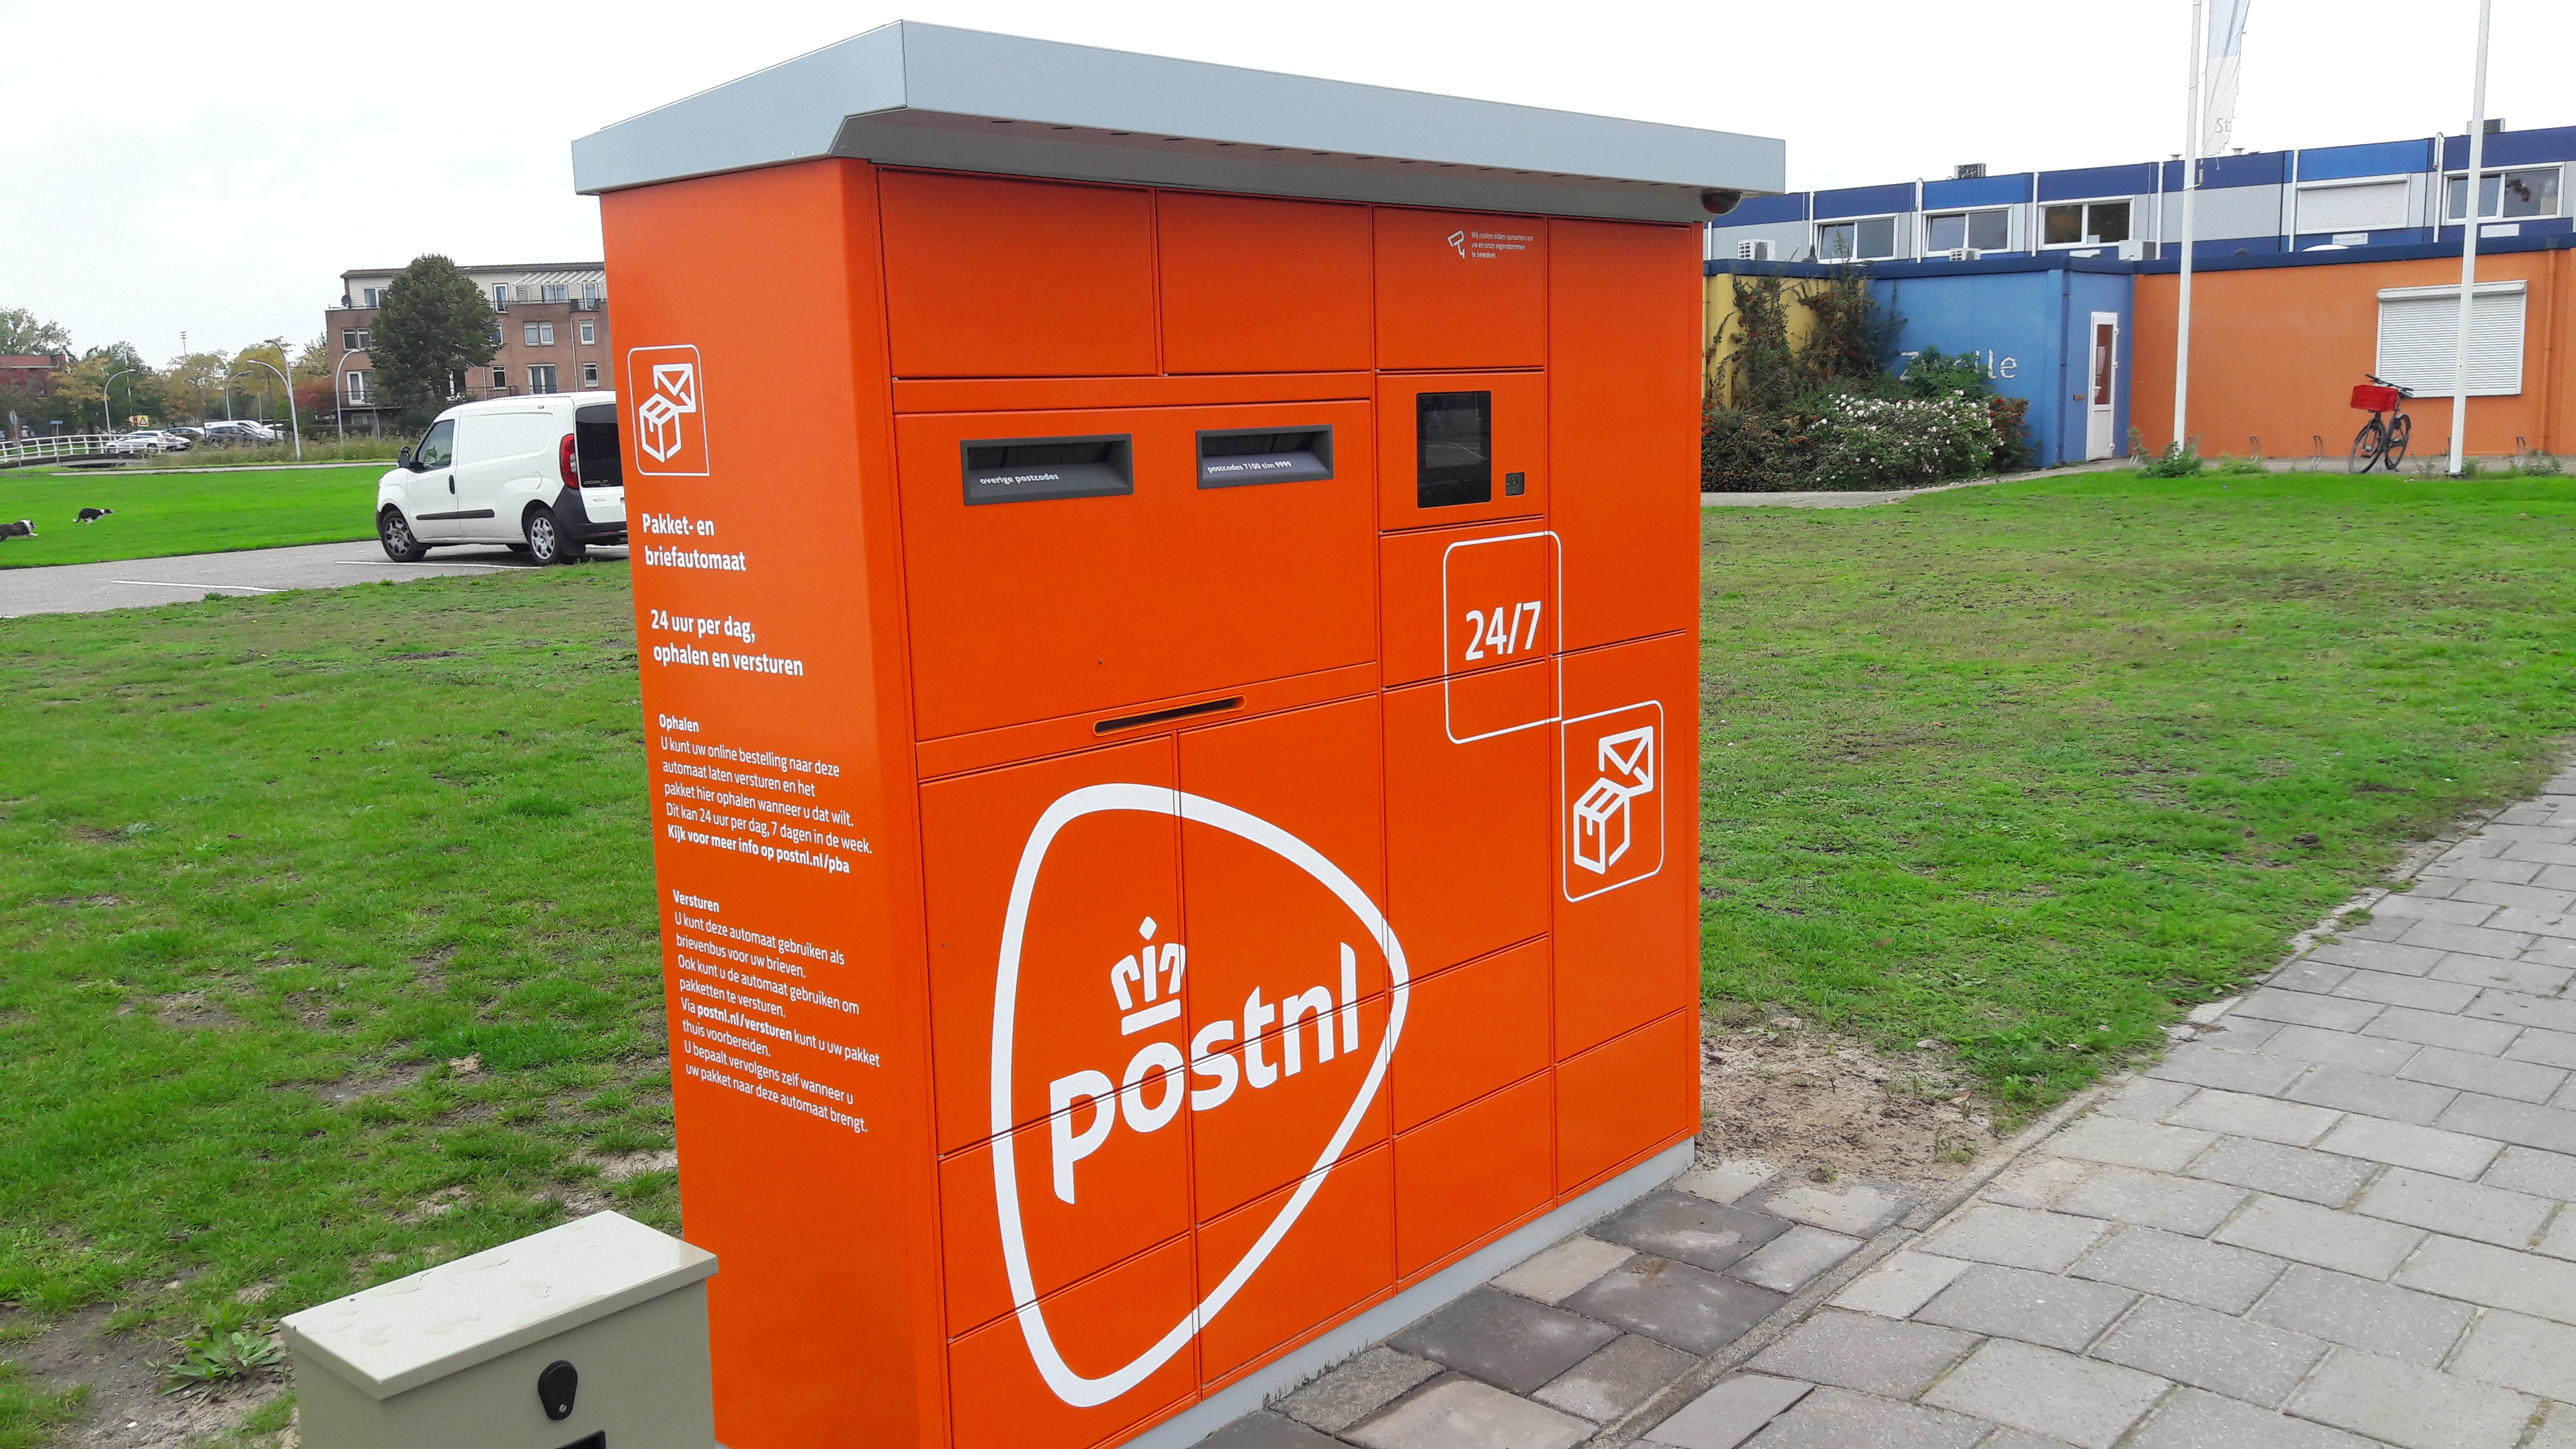 Optimisme Kijker Omdat Pakket- en briefautomaat in winkelcentrum » StadshagenNieuws: alles wat  Stadshagen beweegt!